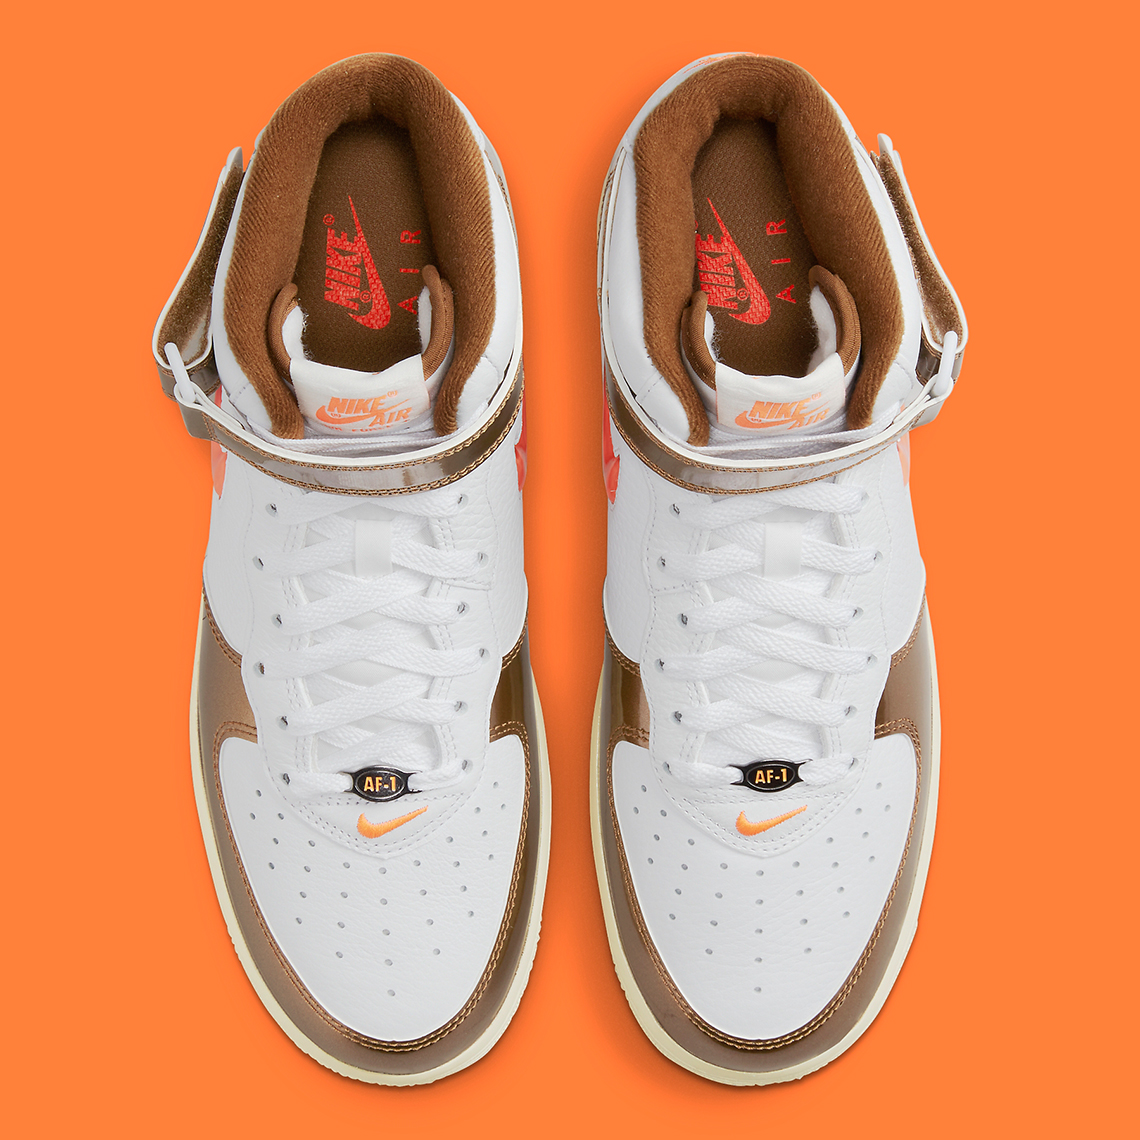 Nike Air Force 1 Mid QS (White/Total Orange/Ale Brown/Beach) – Concepts